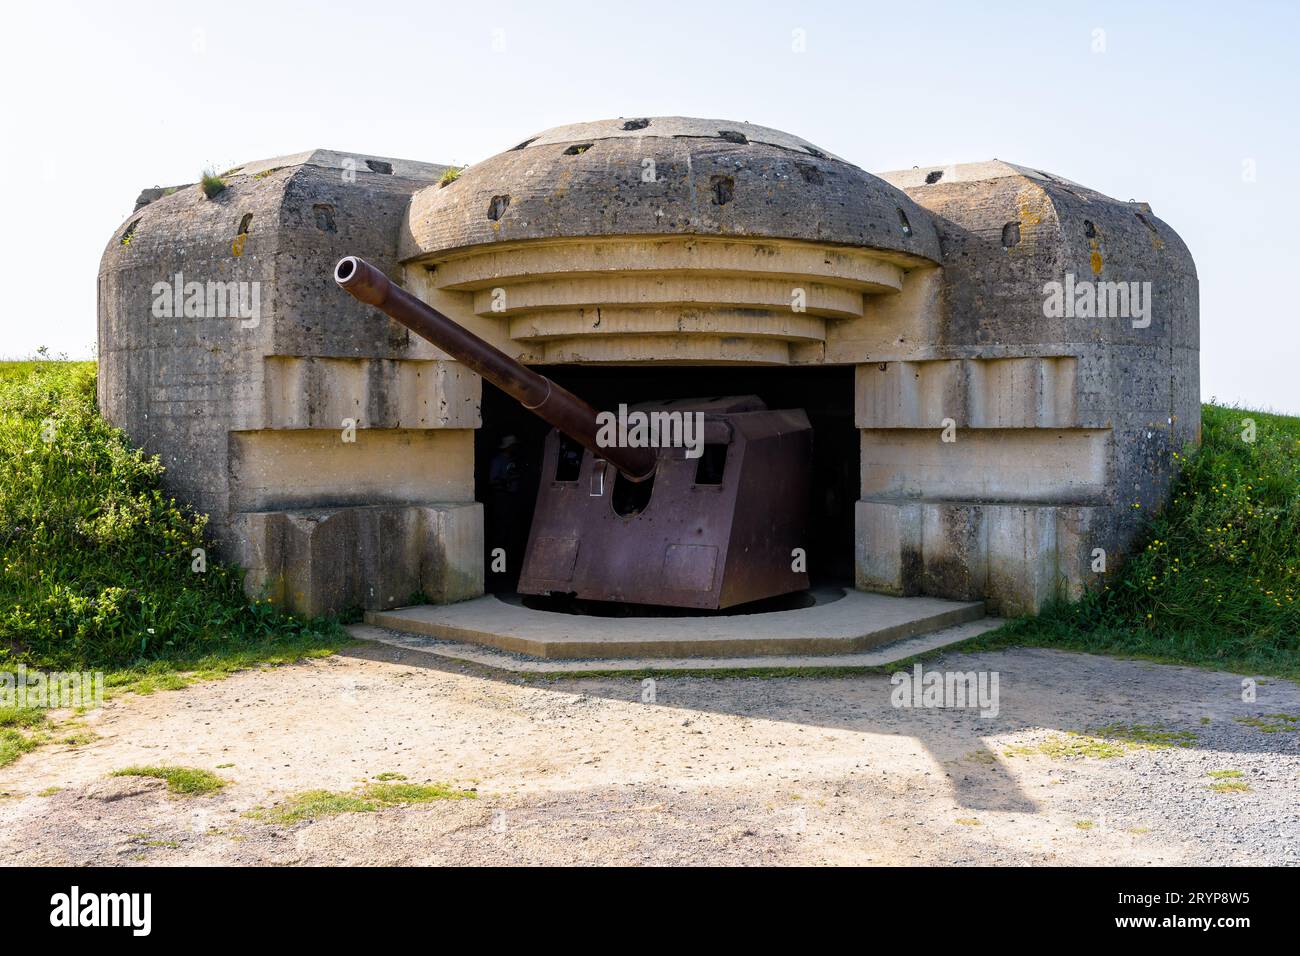 Un bunker contenant un canon de 150 mm dans la batterie de longues-sur-Mer en Normandie, en France, une batterie d'artillerie côtière allemande de la Seconde Guerre mondiale faisant partie du mur de l'Atlantique. Banque D'Images